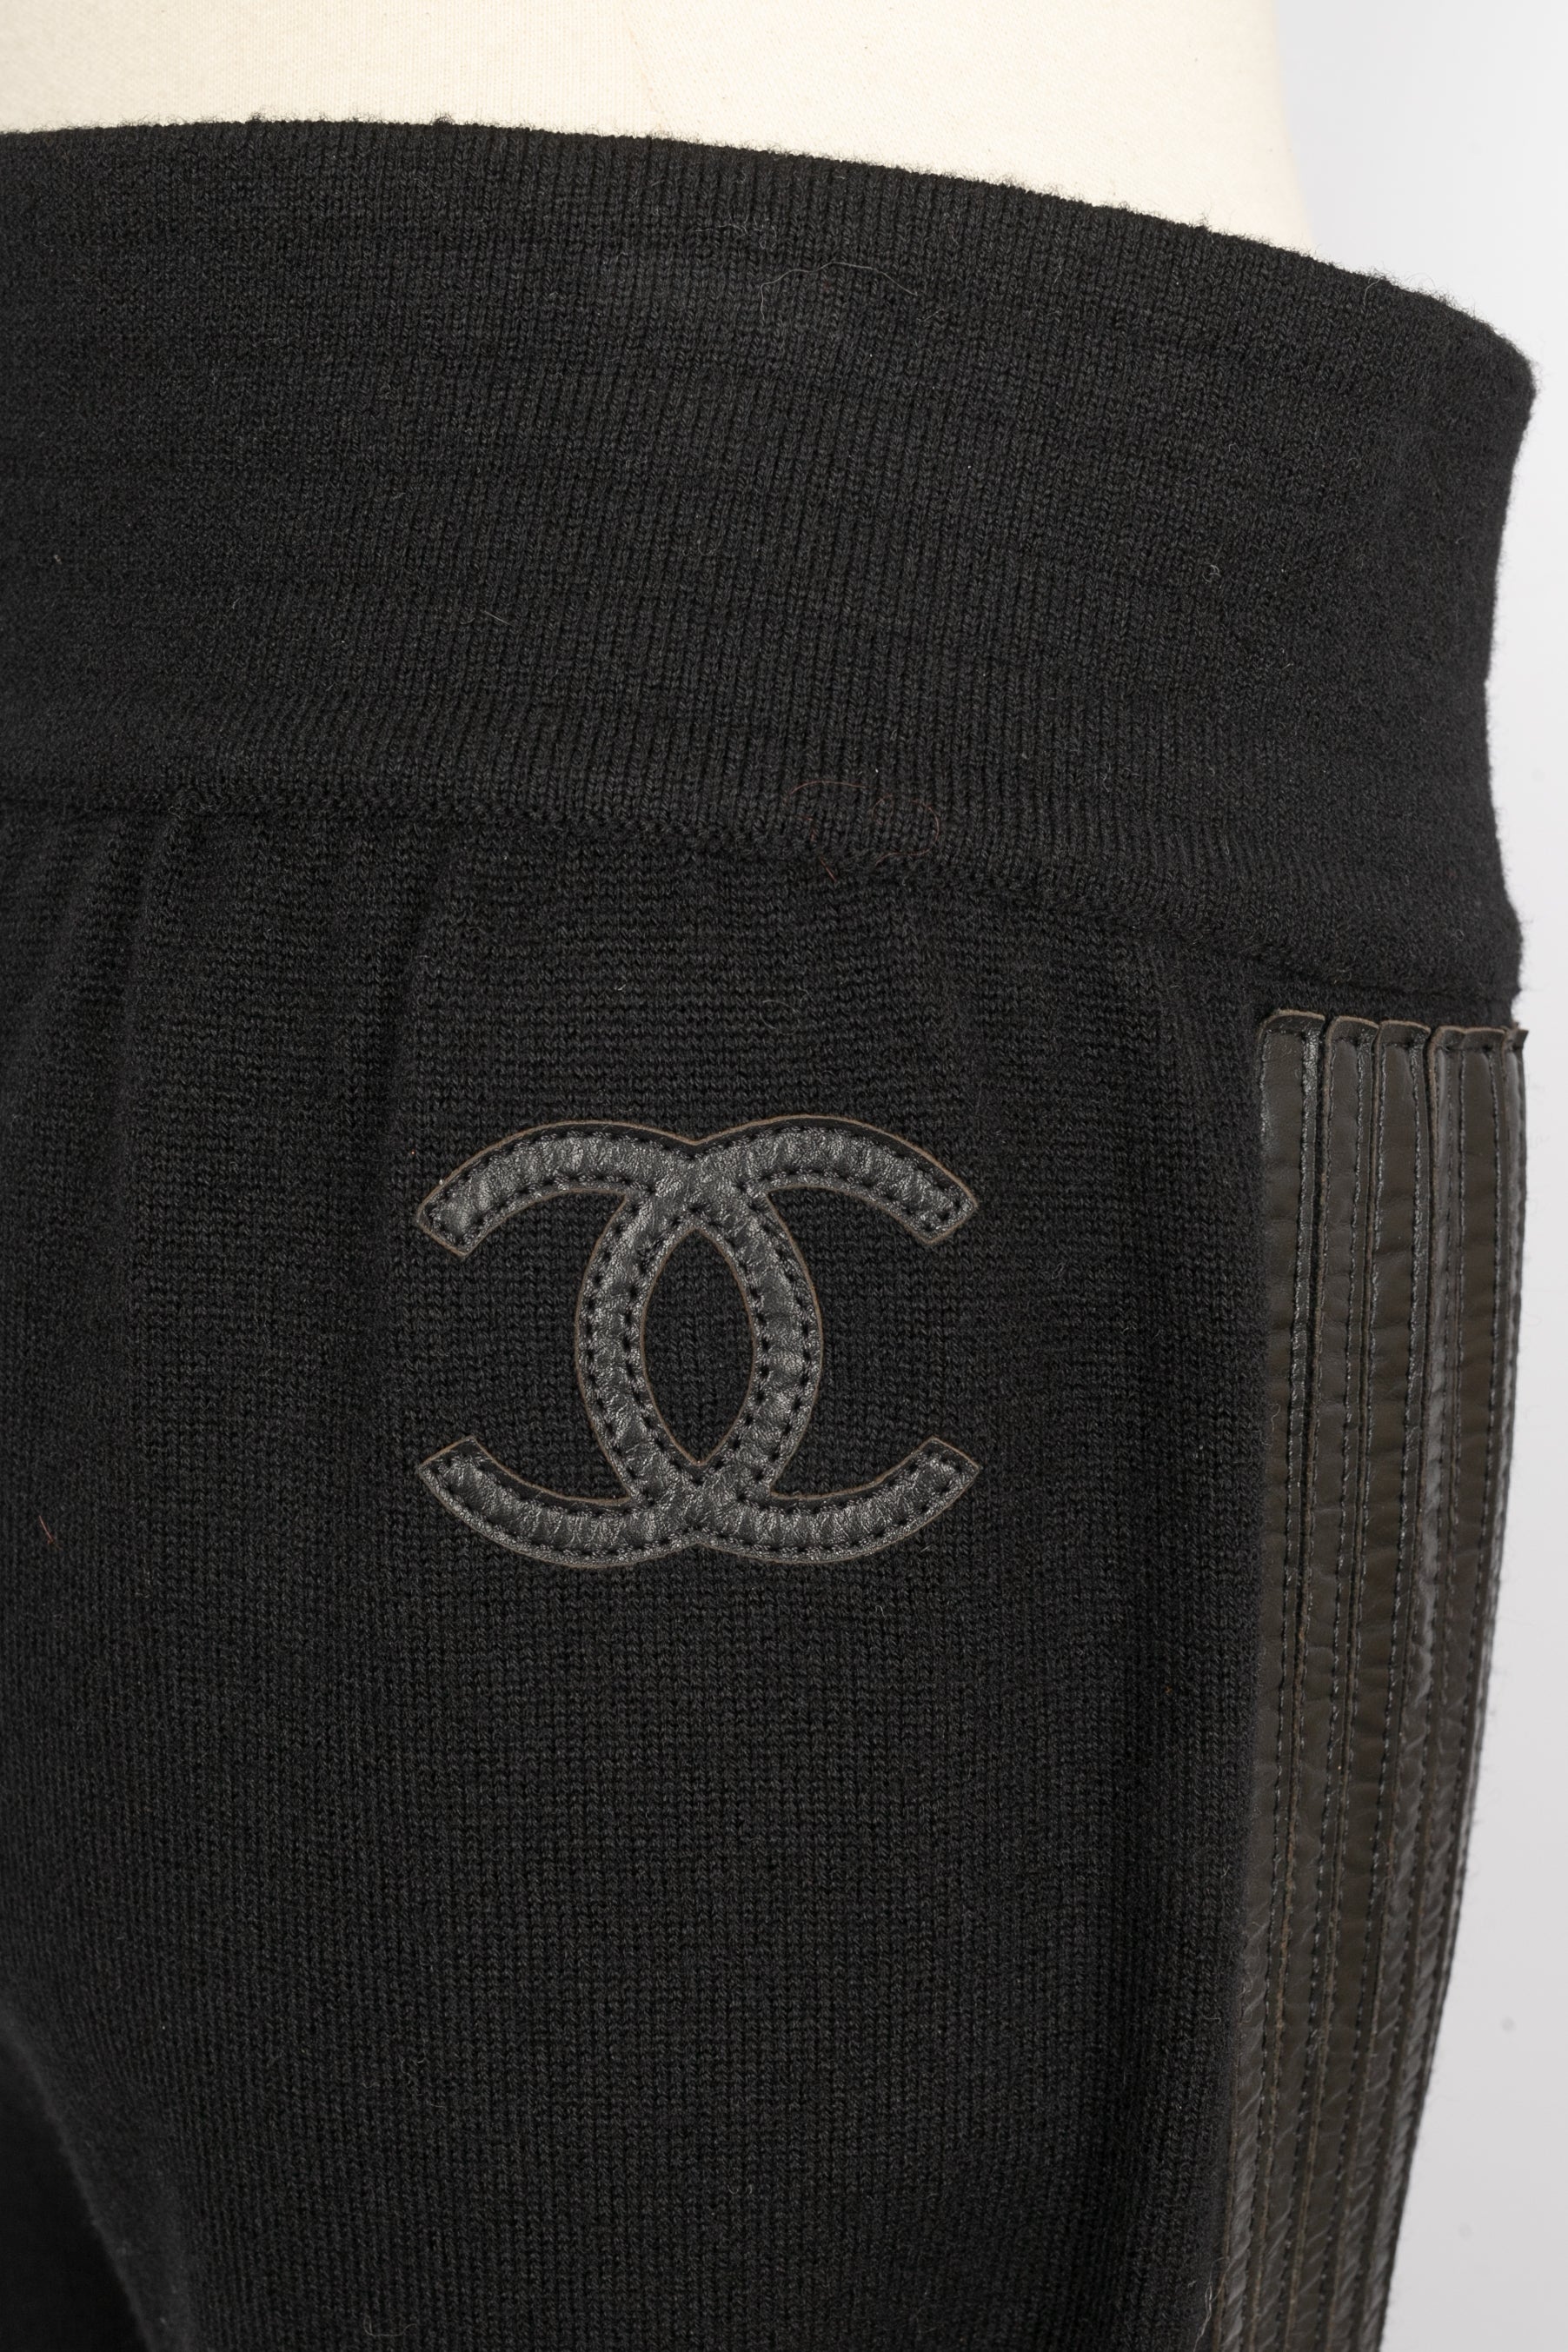 Pantalon Chanel